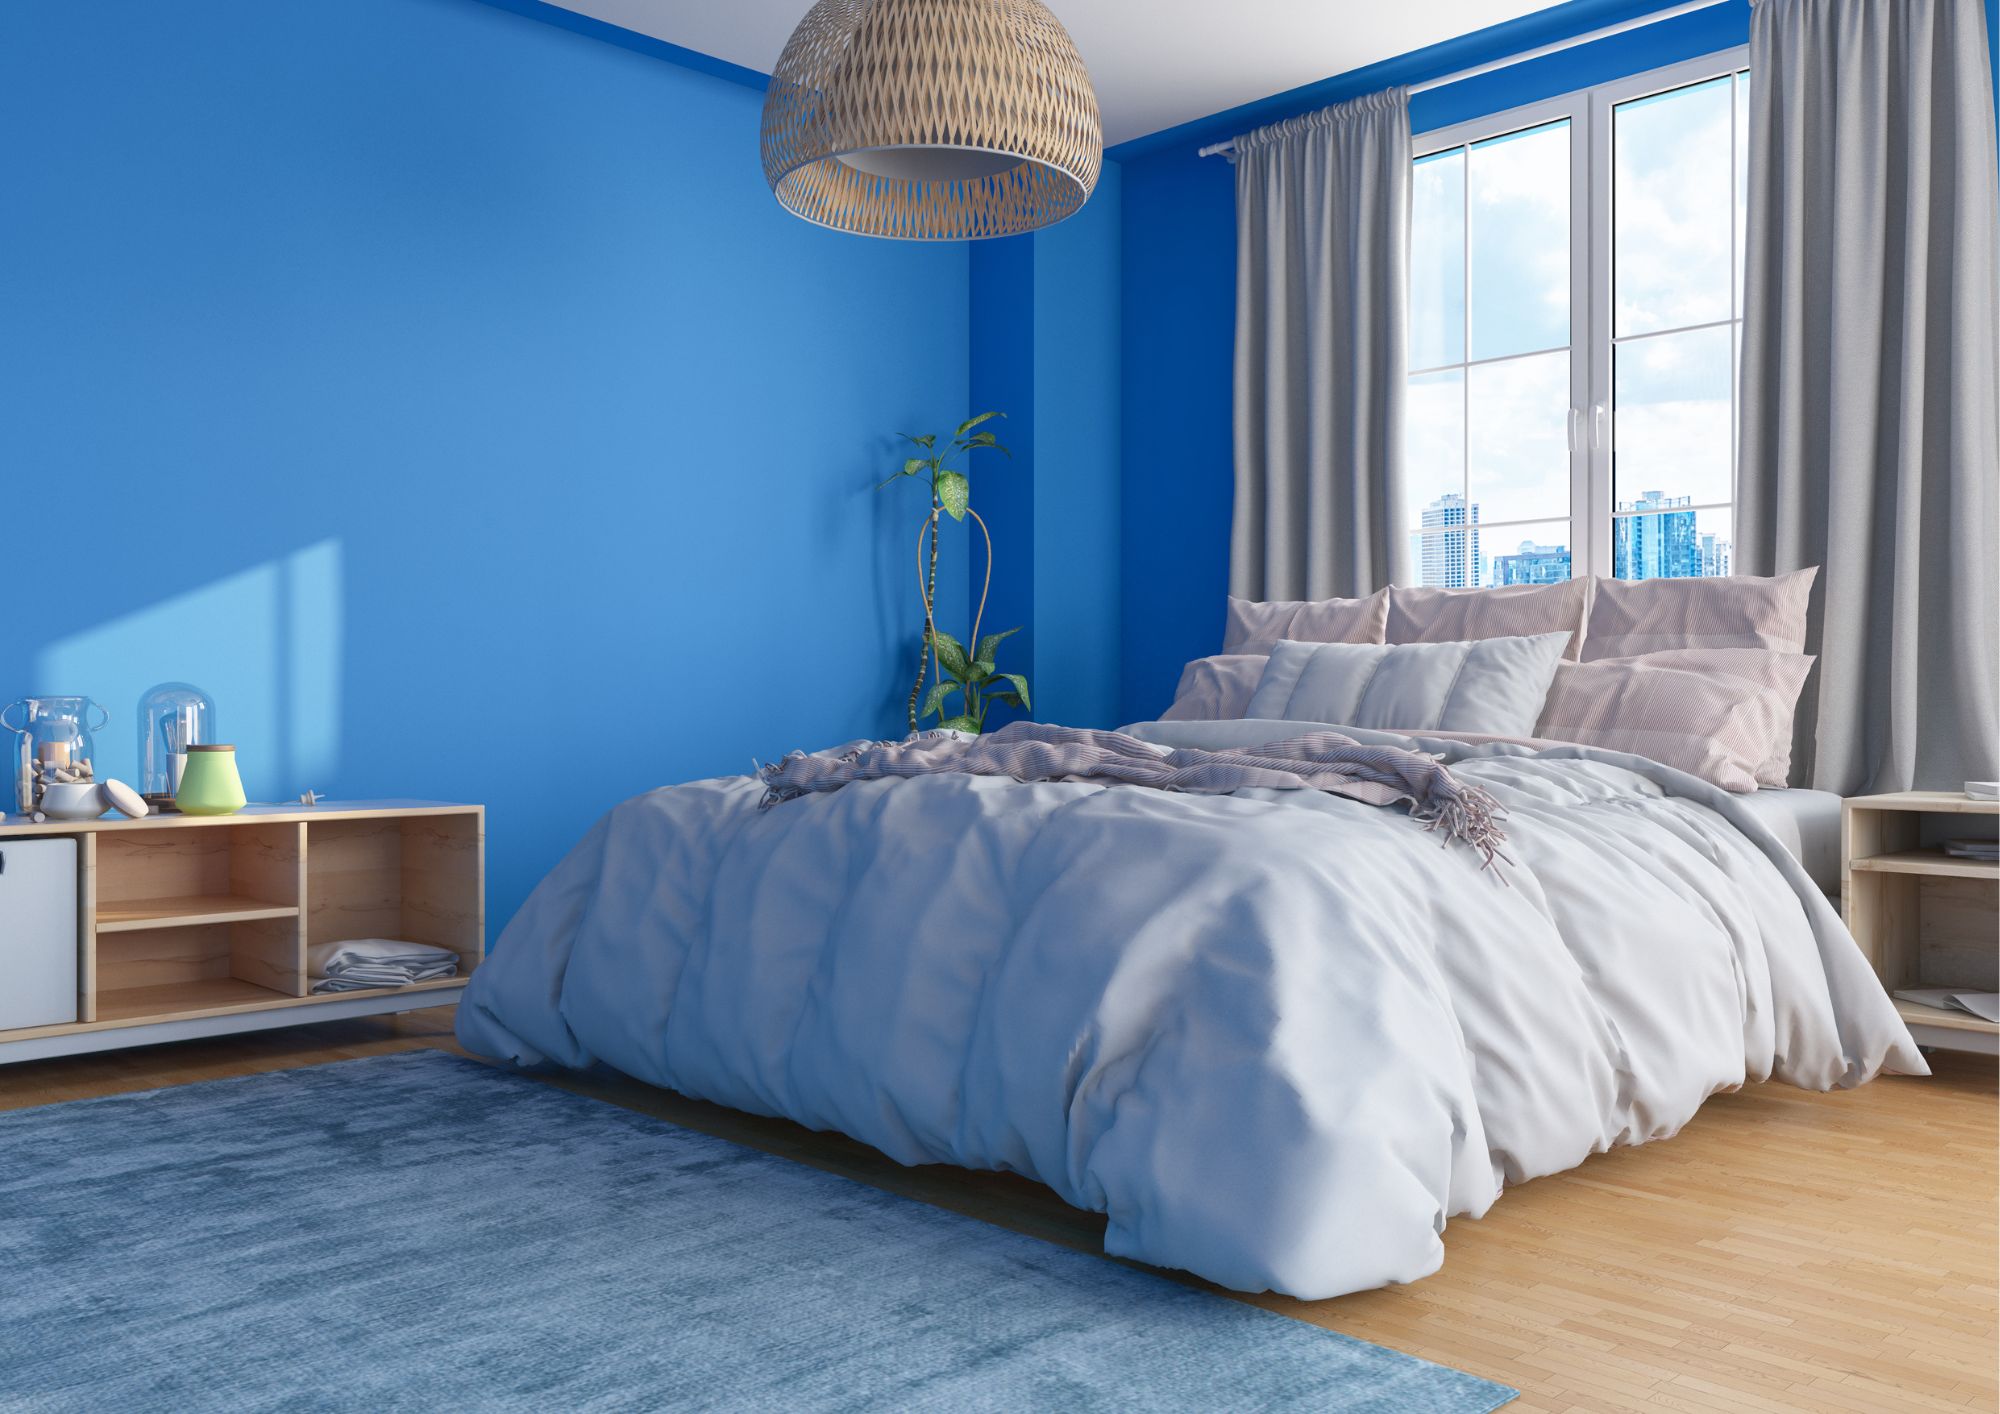 farge på soverommet: Blå